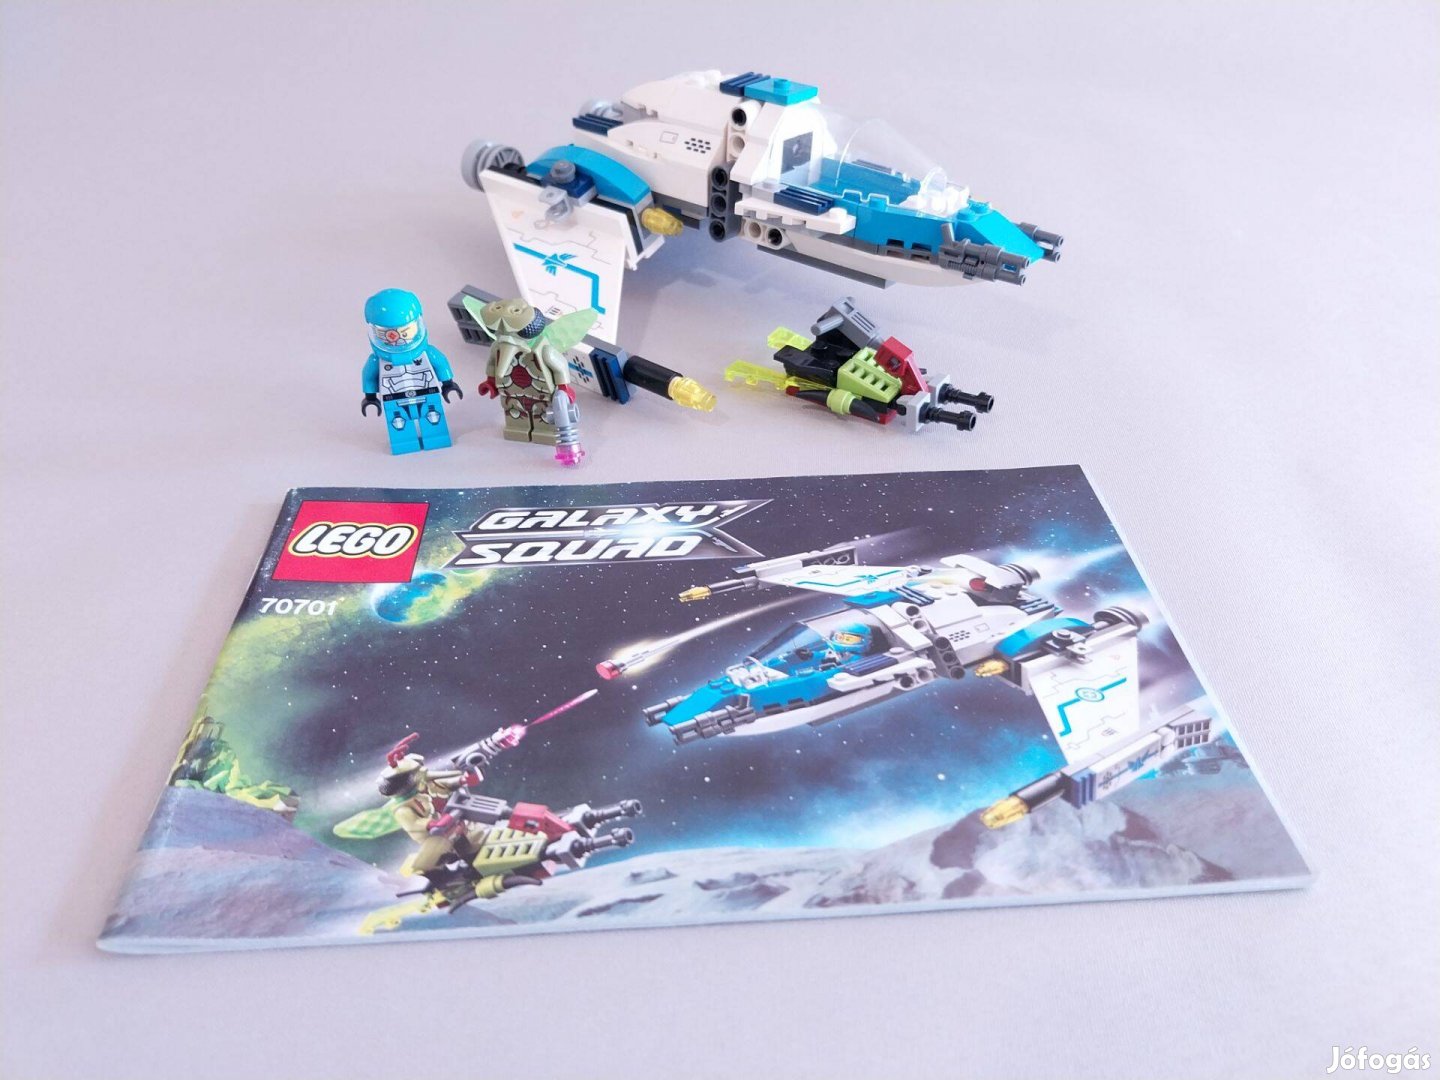 LEGO 70701 Galaxy Squad Swarm Interceptor